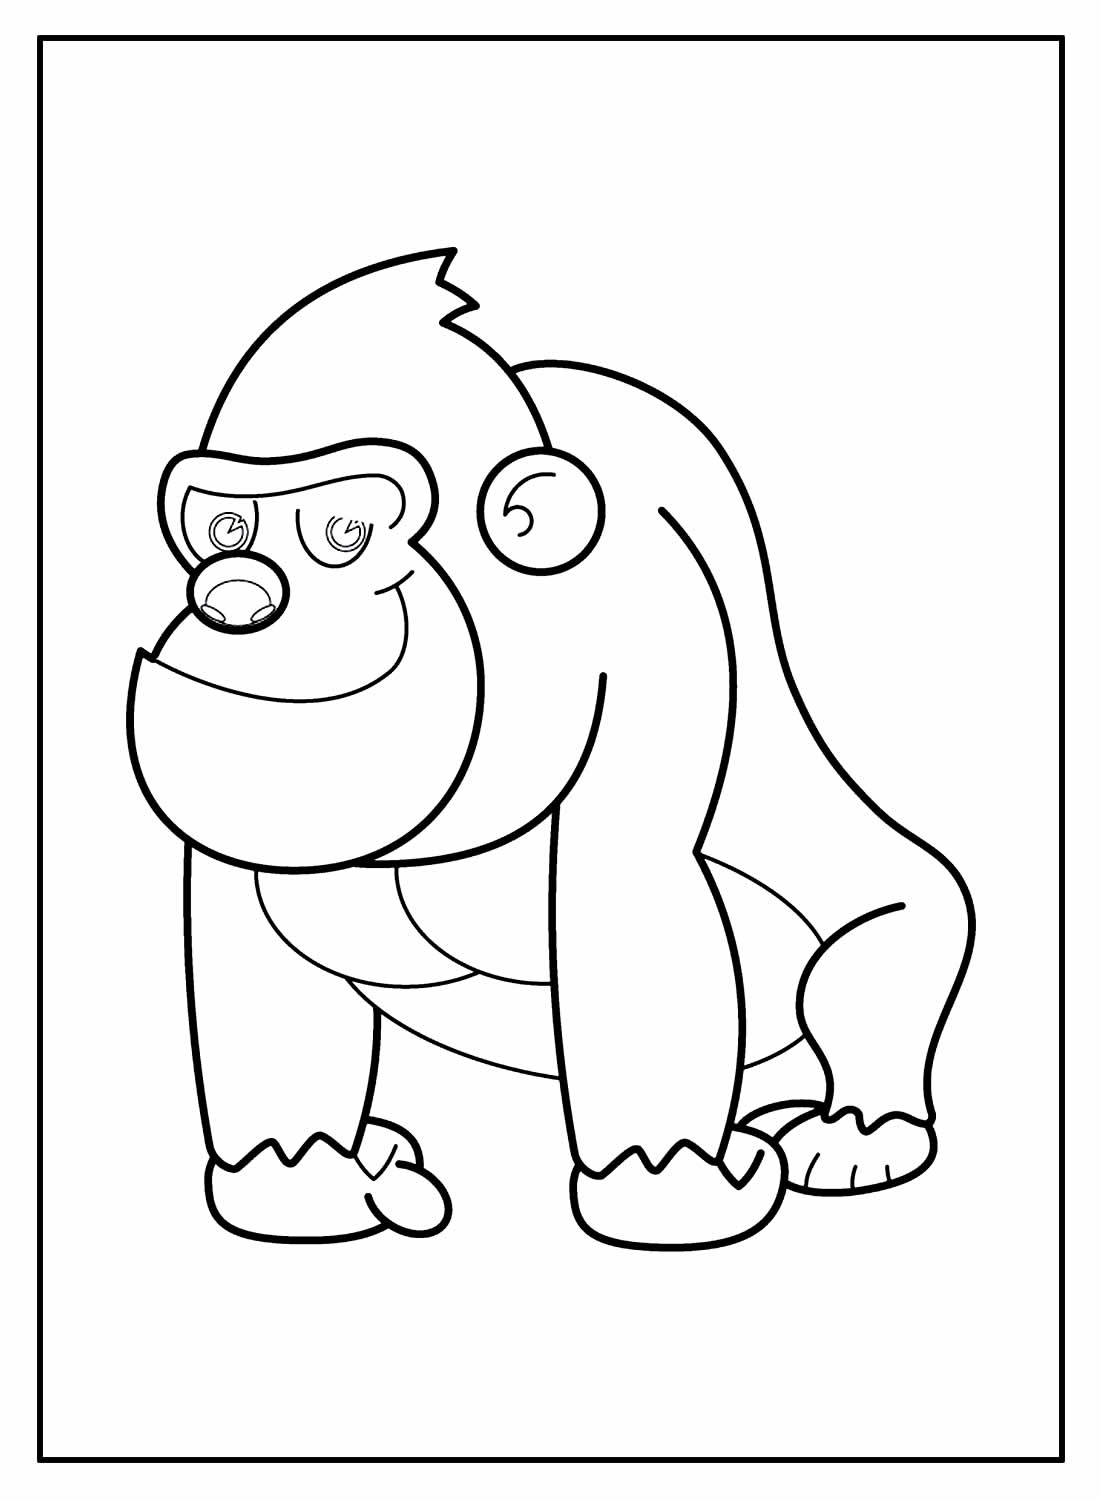 Desenho para colorir - Macaco